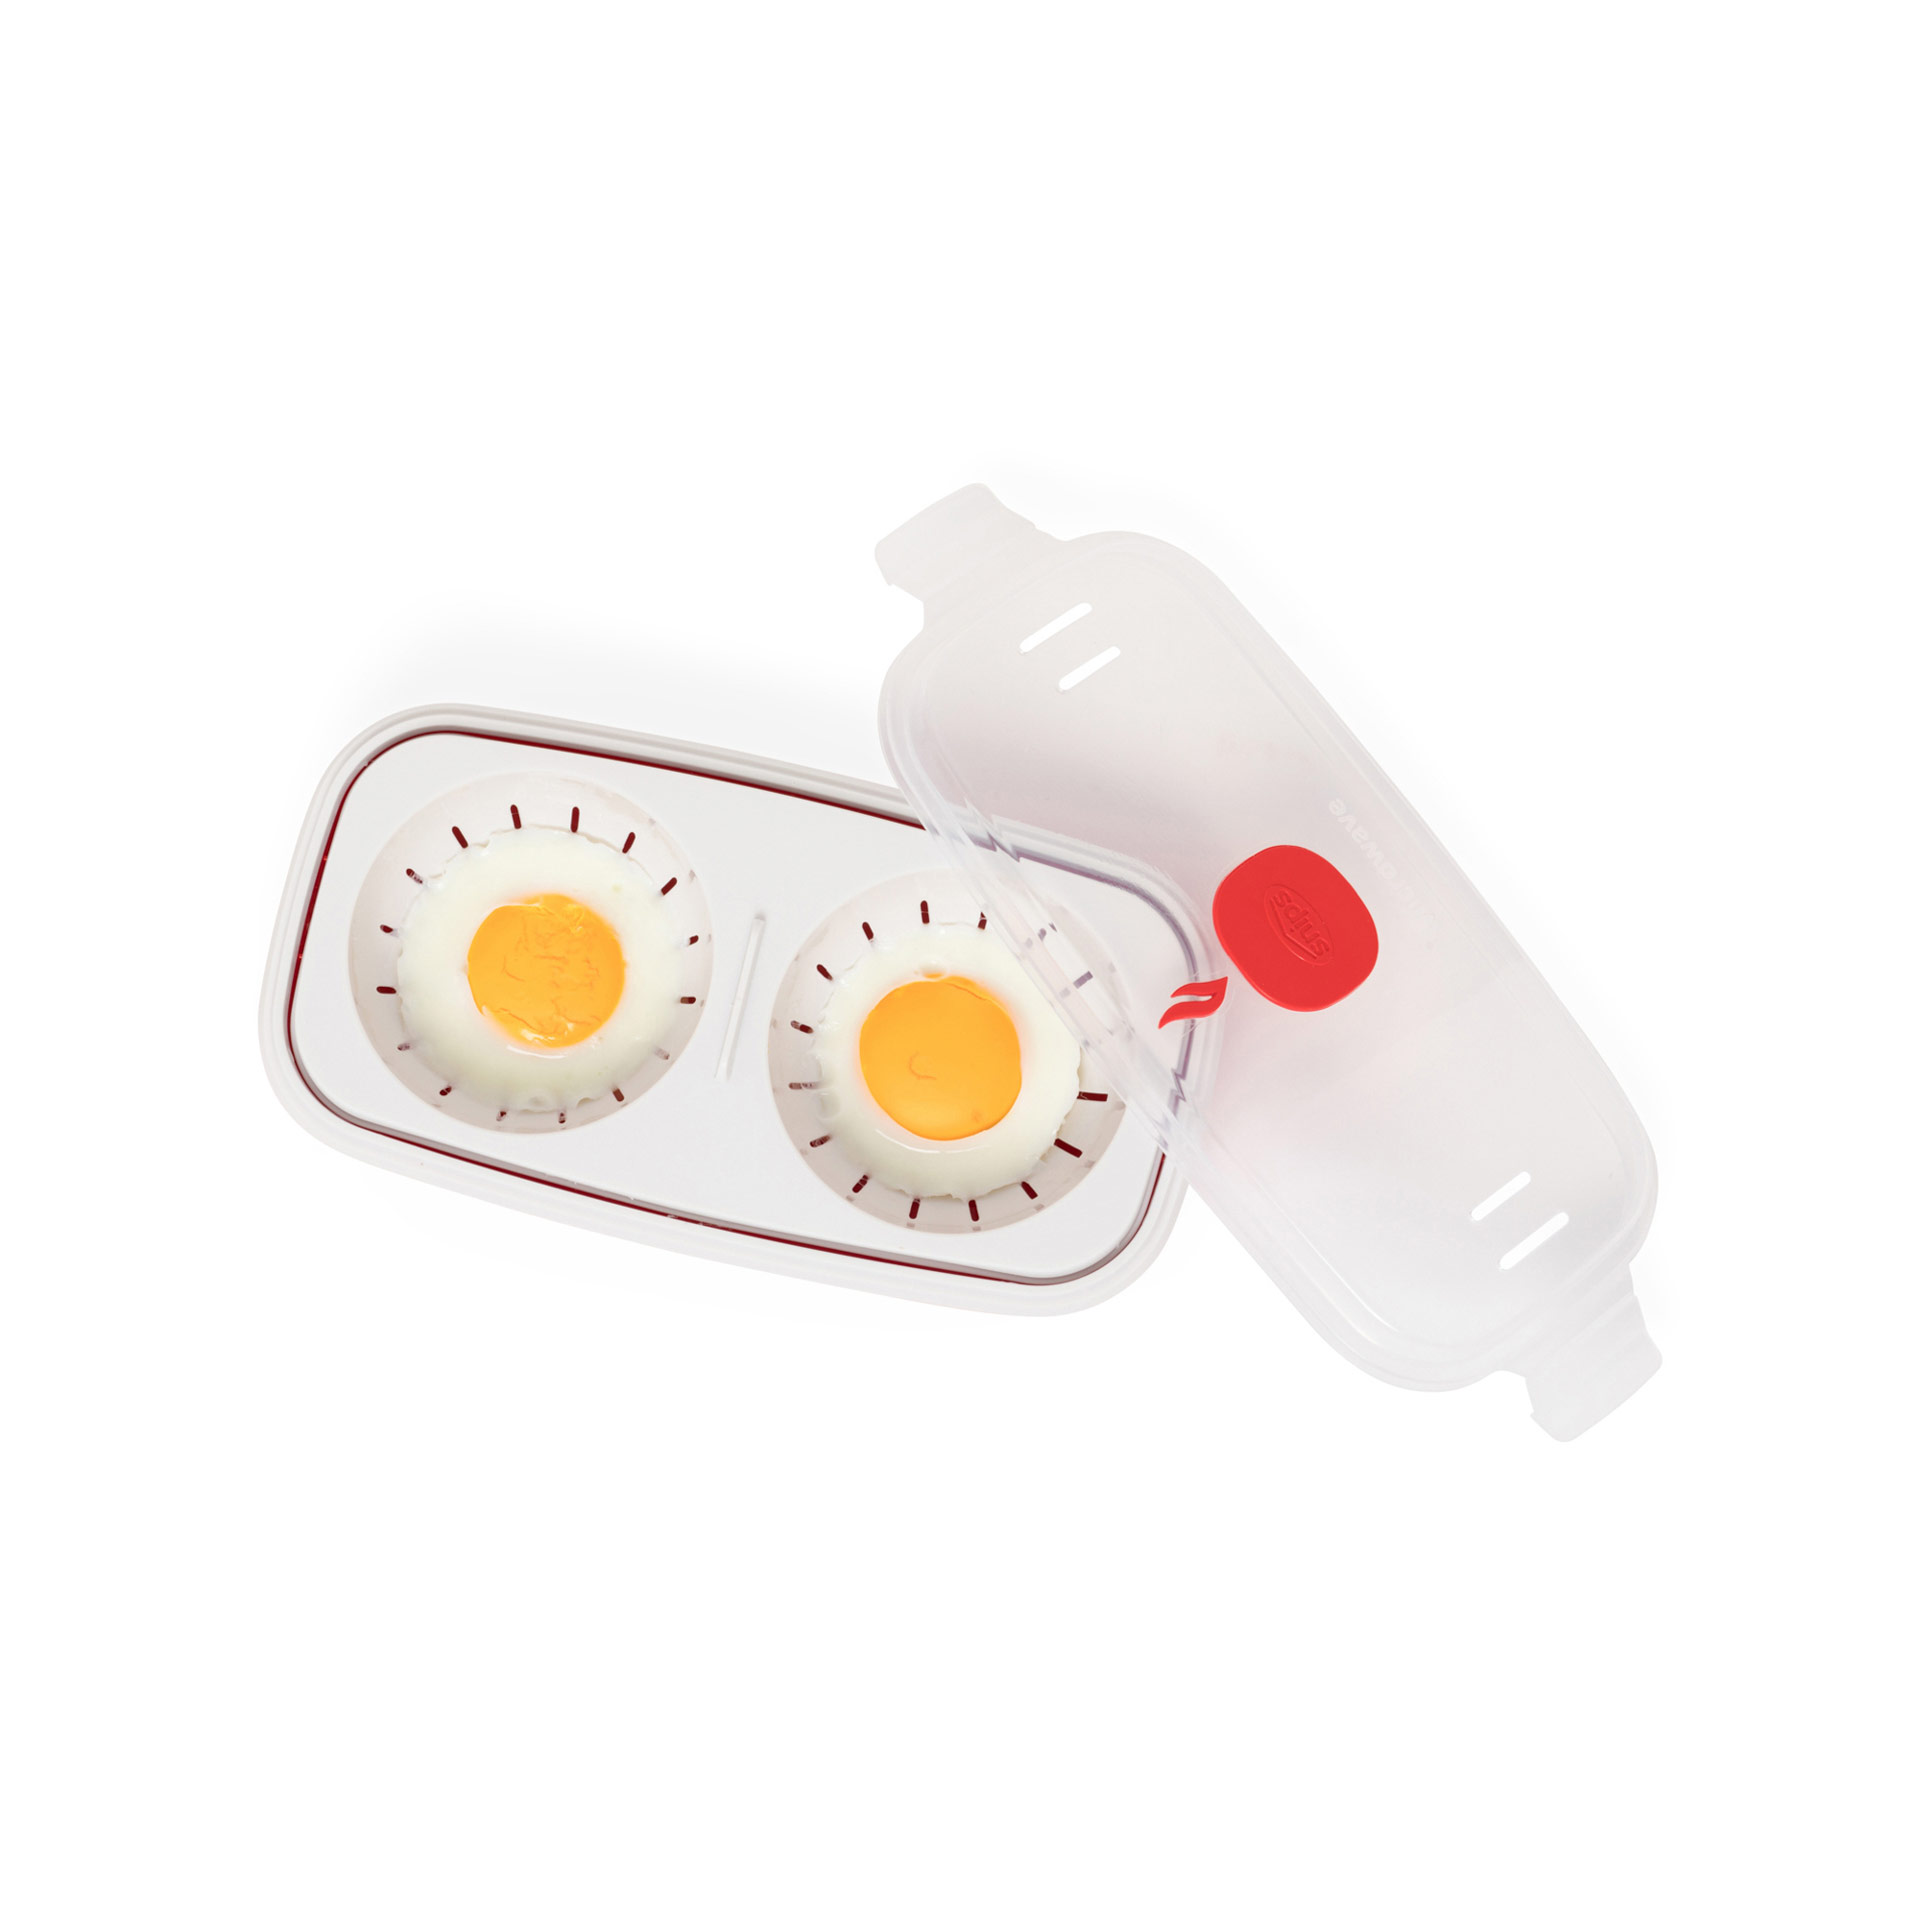 Cuoci uova da microonde per frittate e omelette